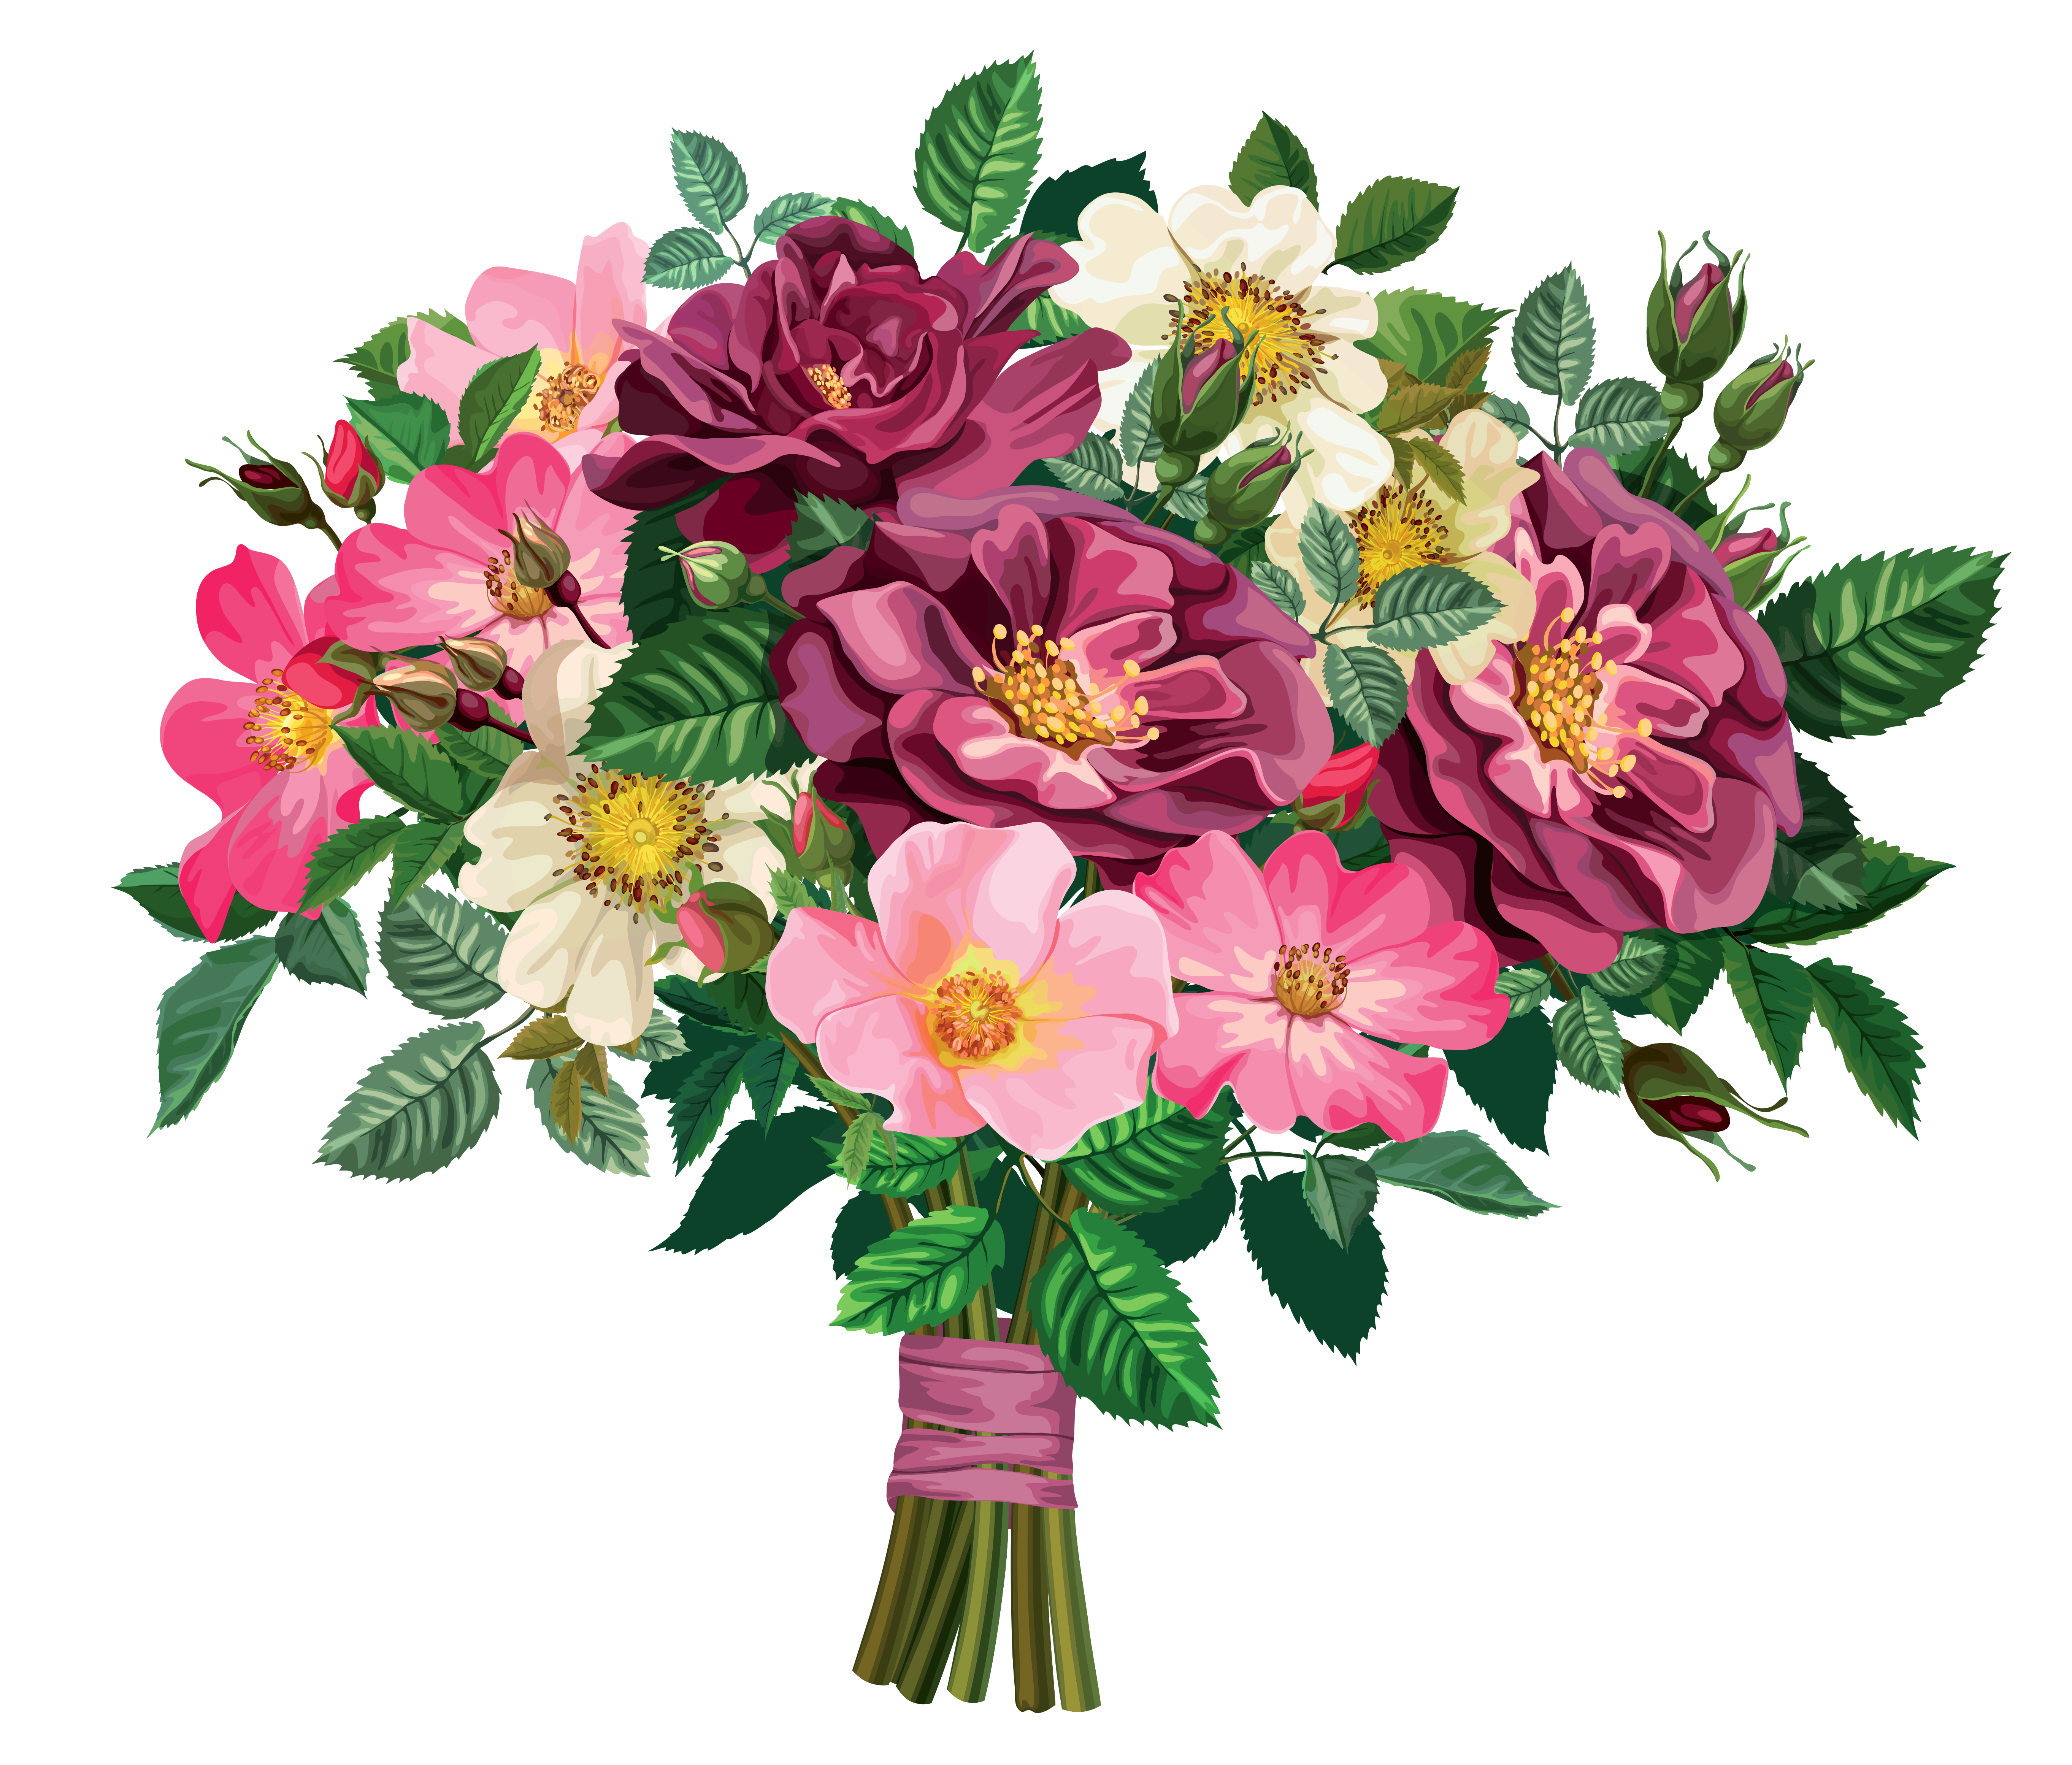 Flower bouquet graphics 